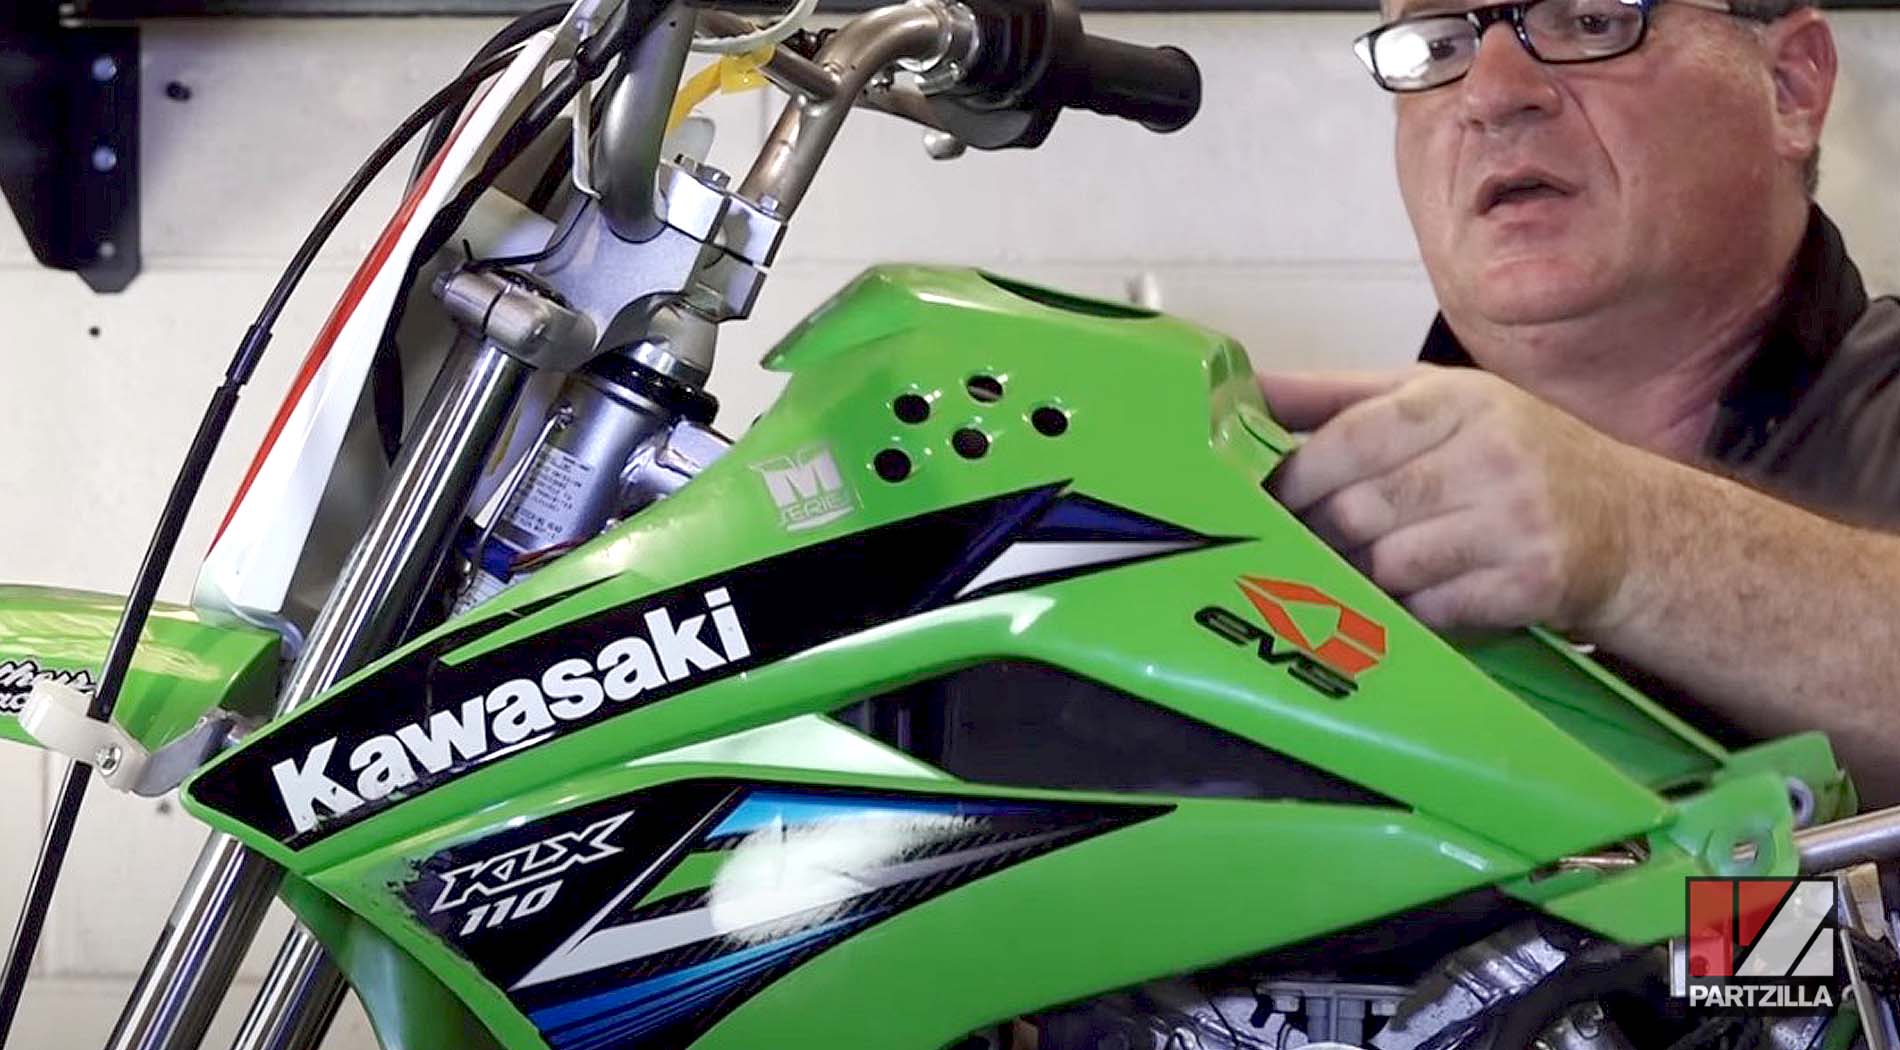 2015 Kawasaki KLX 110 motorcycle air filter replacement